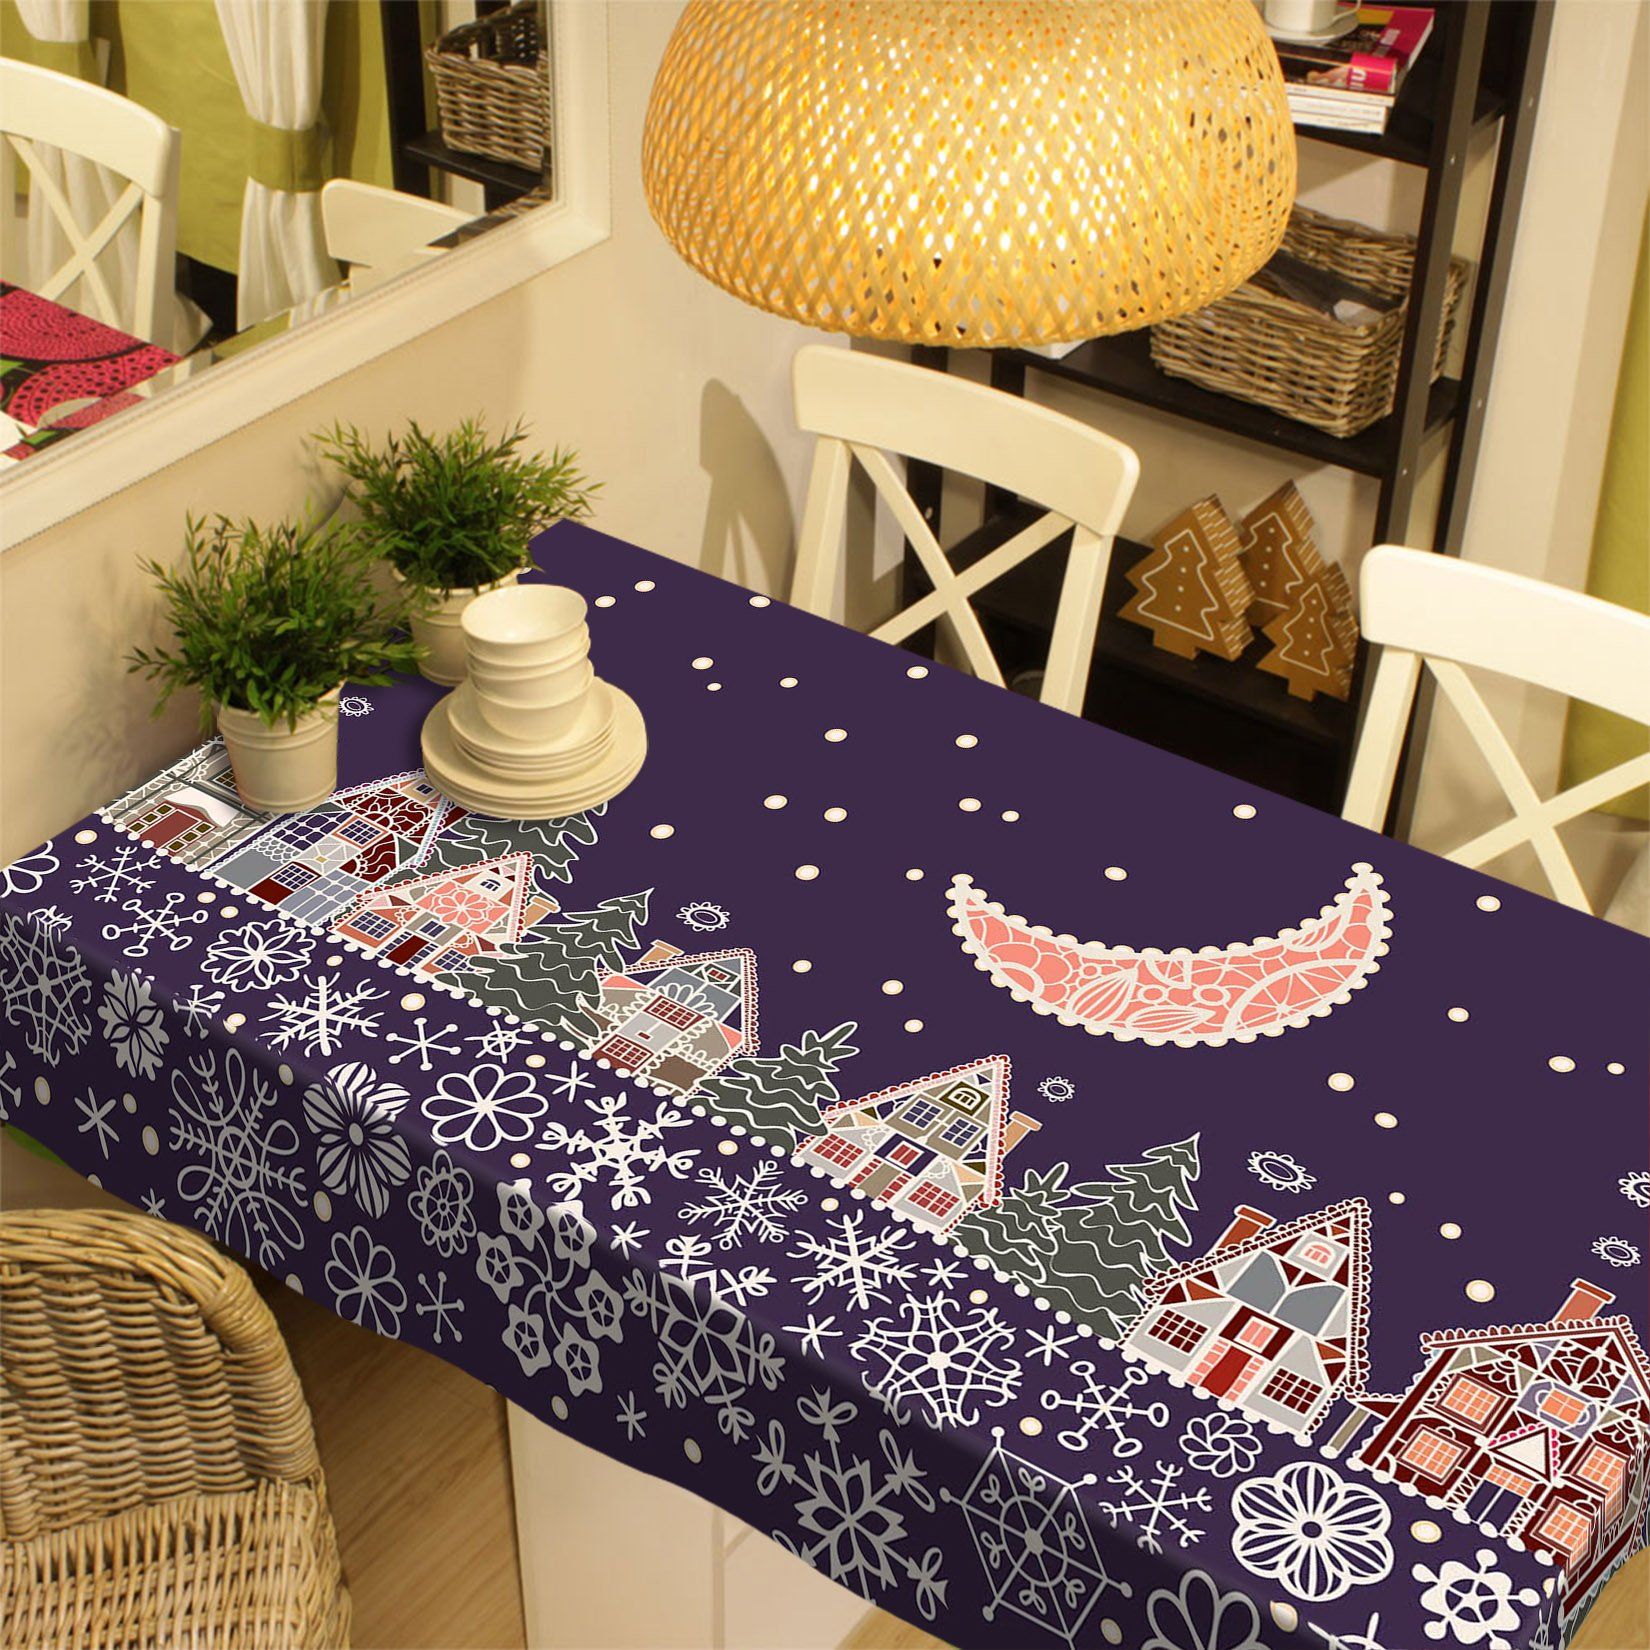 3D Cartoon Moon Lace 29 Tablecloths Tablecloths AJ Creativity Home 